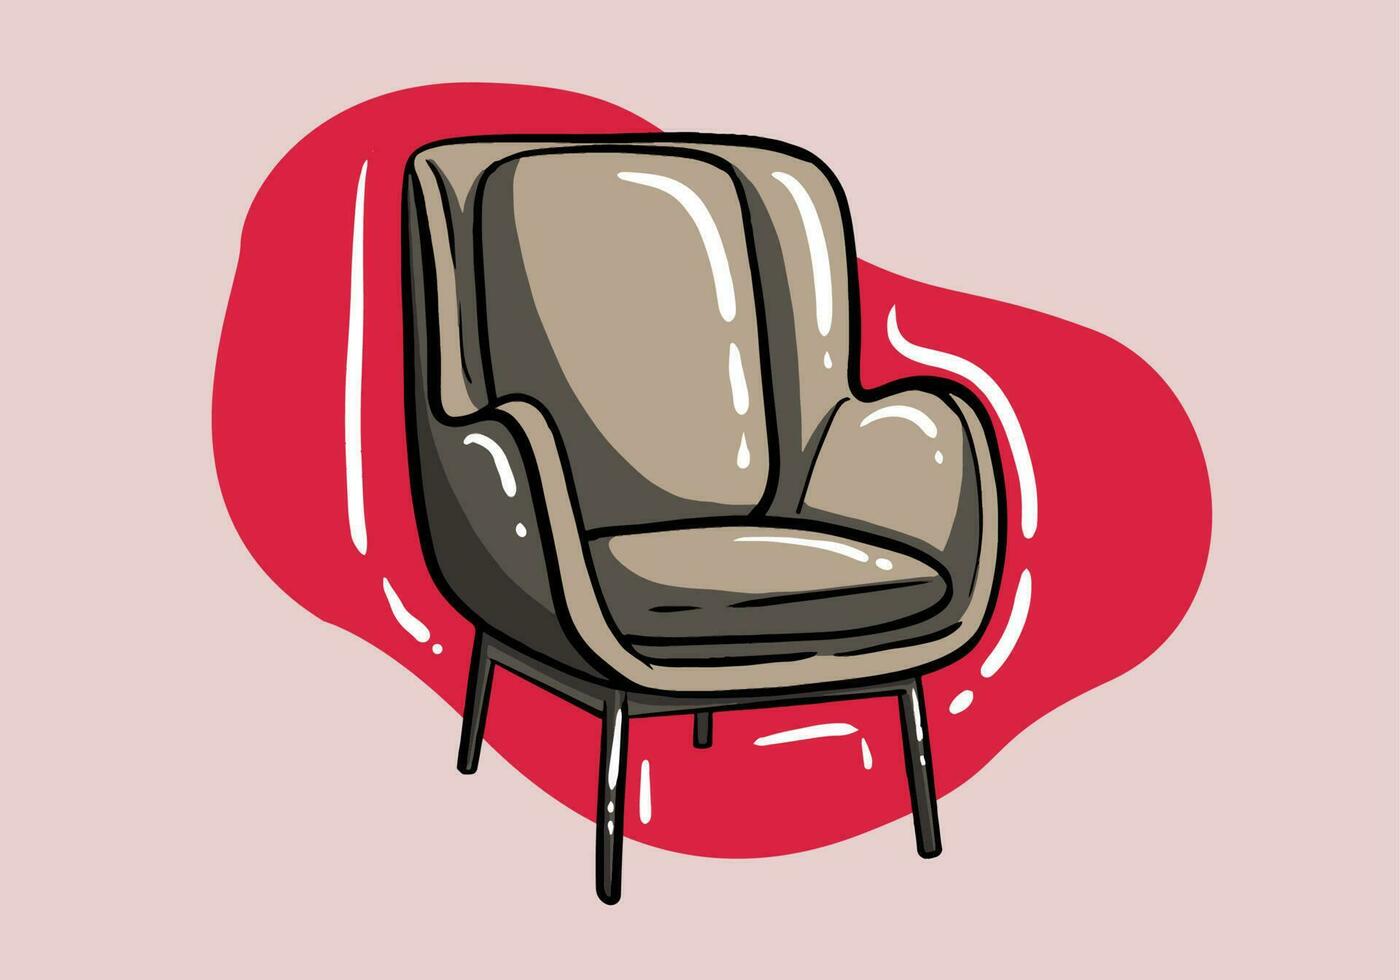 Leben Zimmer Möbel Konzept. Aufkleber mit klassisch Sessel mit gepolstert Armlehnen und Sitz vektor